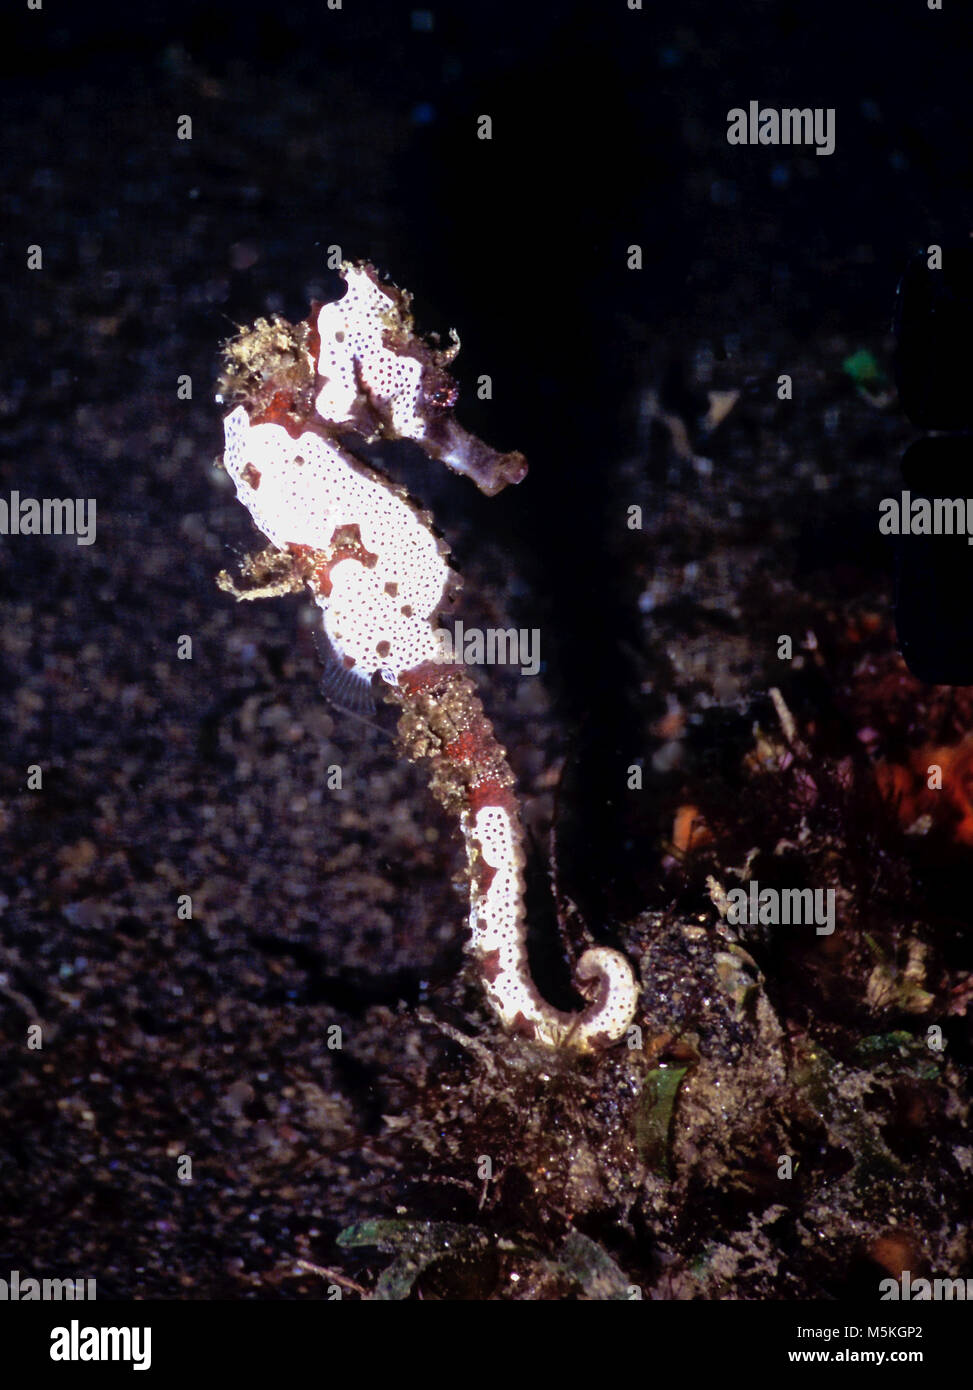 Dies ist ein Bild für ein Dorniges Seepferdchen (Hippocampus histrix: 10 cms.). Der Roten Liste der IUCN weist darauf hin, dass sie verwundbar ist. Es ist in der indo-west Pazifik gefunden, meist in der Nähe von Schwämmen und Weichkorallen. Gemeinsam mit anderen Seepferdarten, es ist wegen der Überfischung (es wird Schleppnetz Beifang), Umweltverschmutzung und Küstengebieten bedroht. Für den Schutz, die Körper aller Seepferdchen sind mit knöchernen Platten abgedeckt. In diesem Fall, dass viele dieser Platten sind mit einer Verkrustung der weißen Bryozoen, die Tarnung der Tiere gelegt. Im Norden von Sulawesi, Indonesien fotografiert. Stockfoto